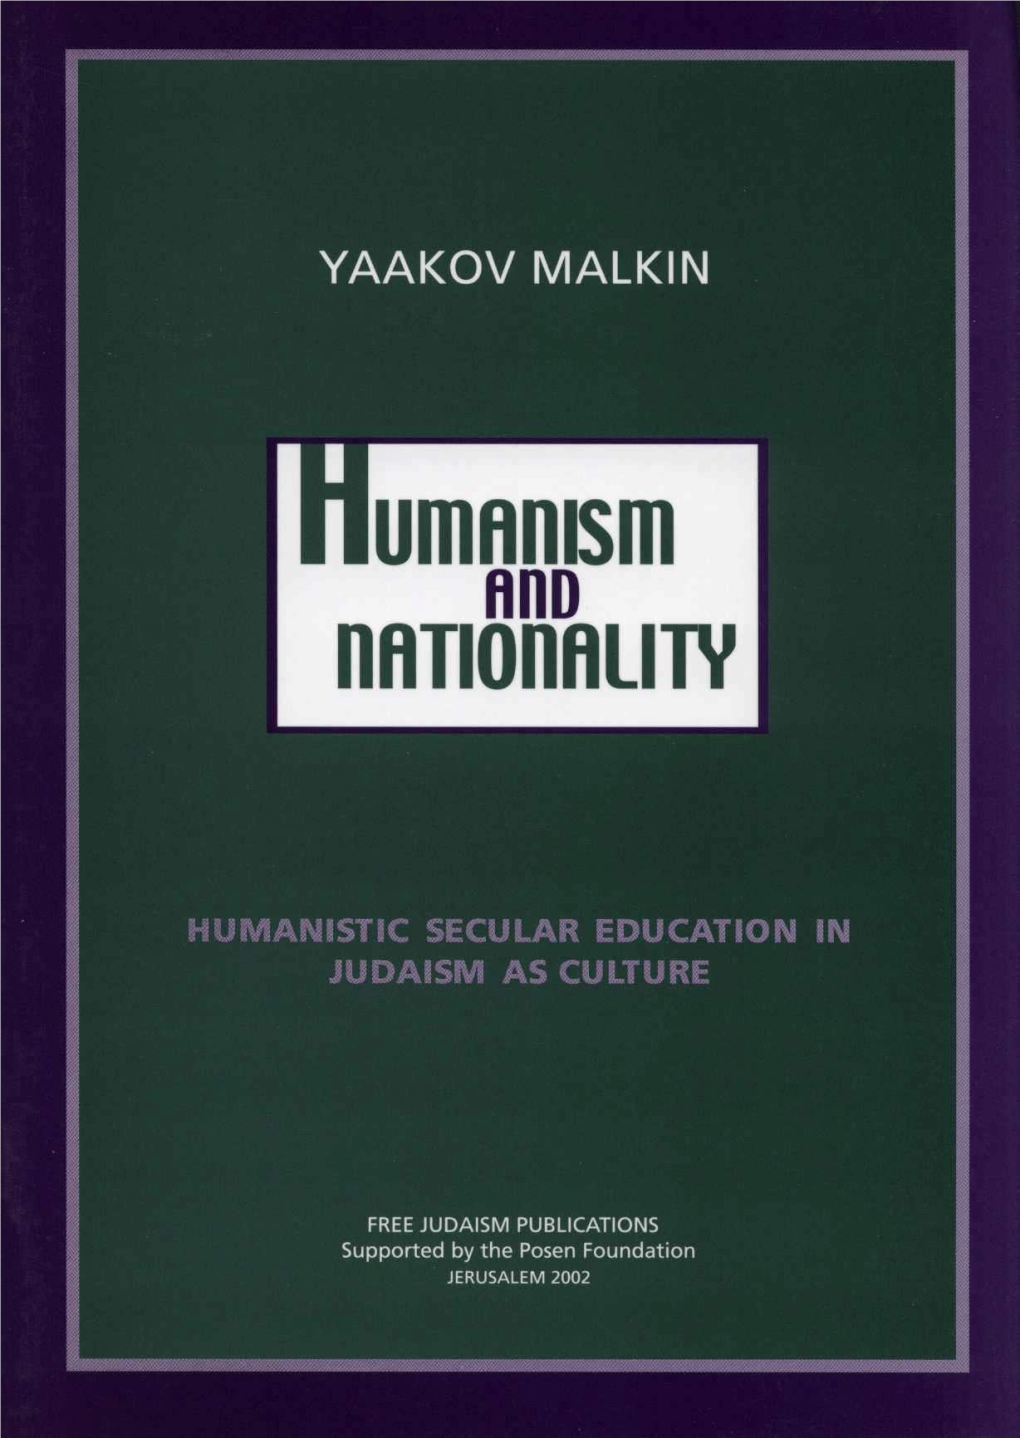 Yaakov Malkin